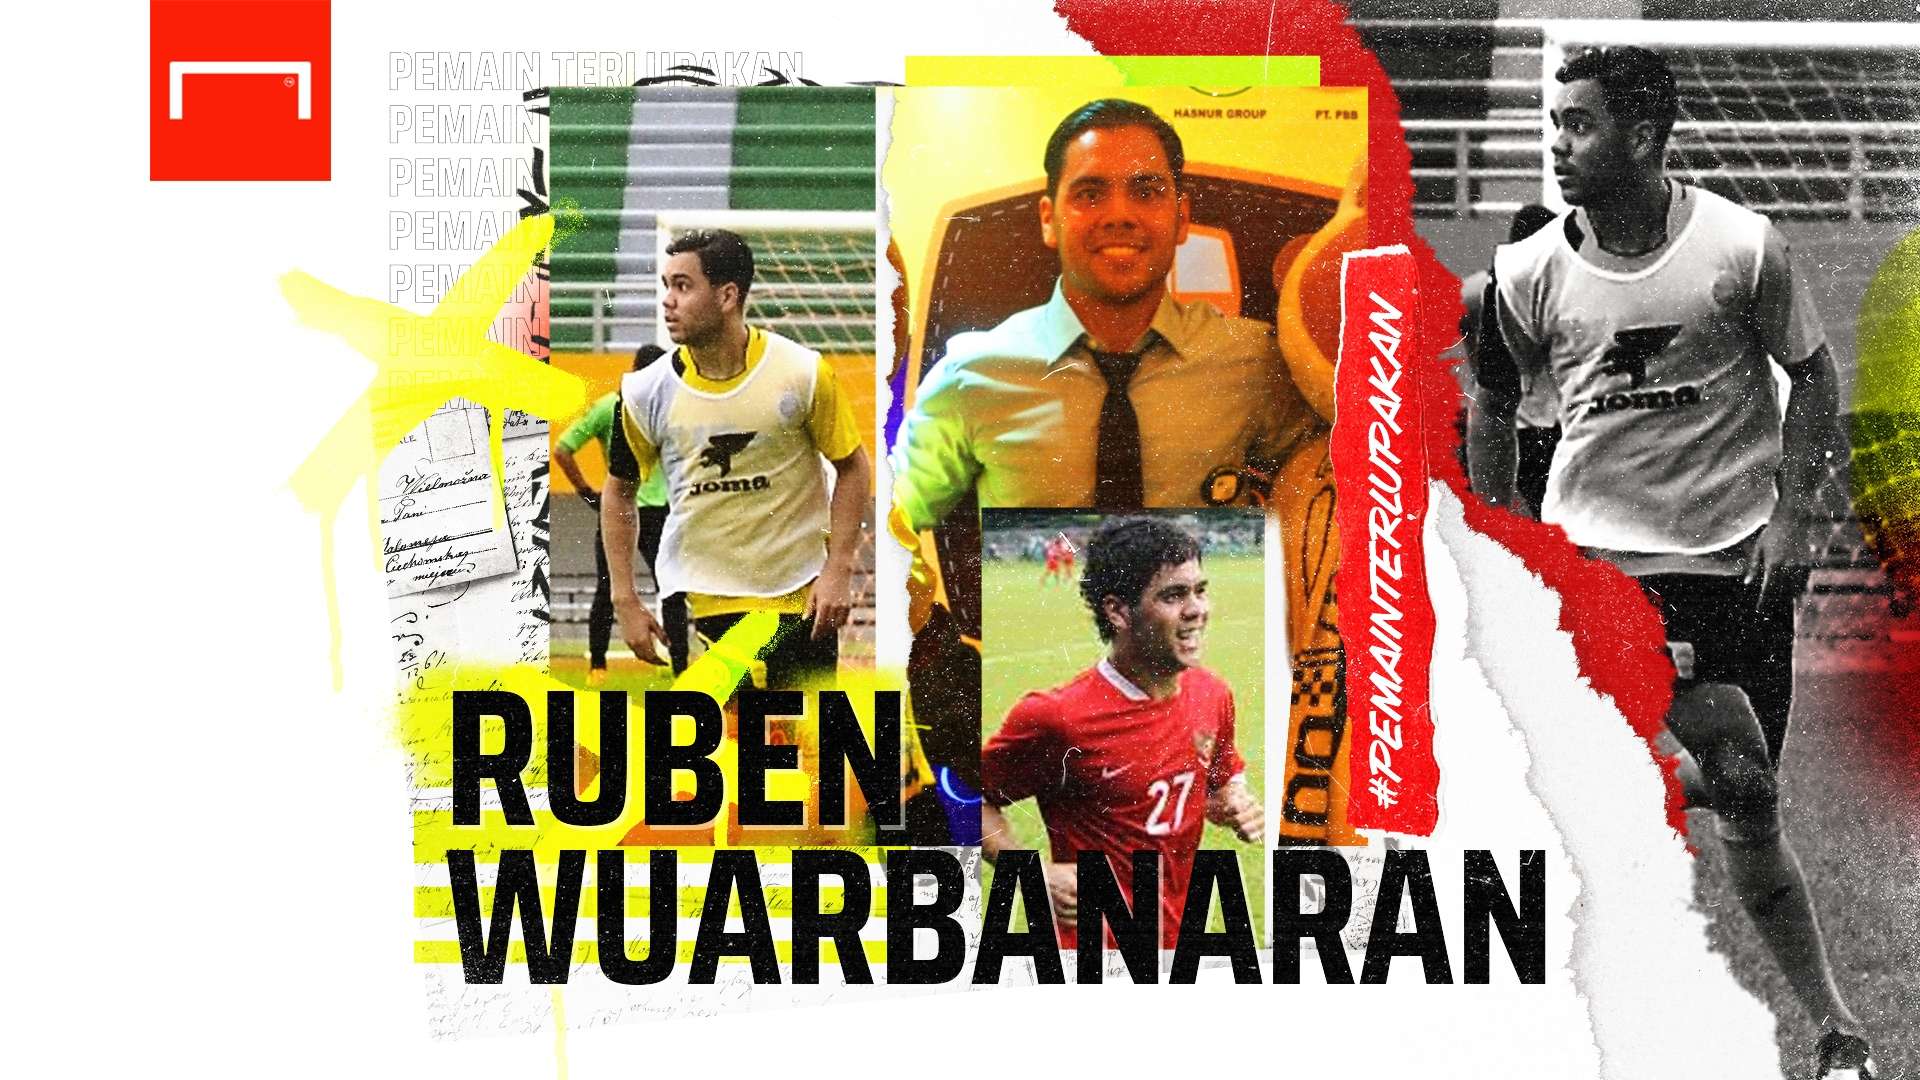 Ruben Wuarbanaran - Pemain Terlupakan